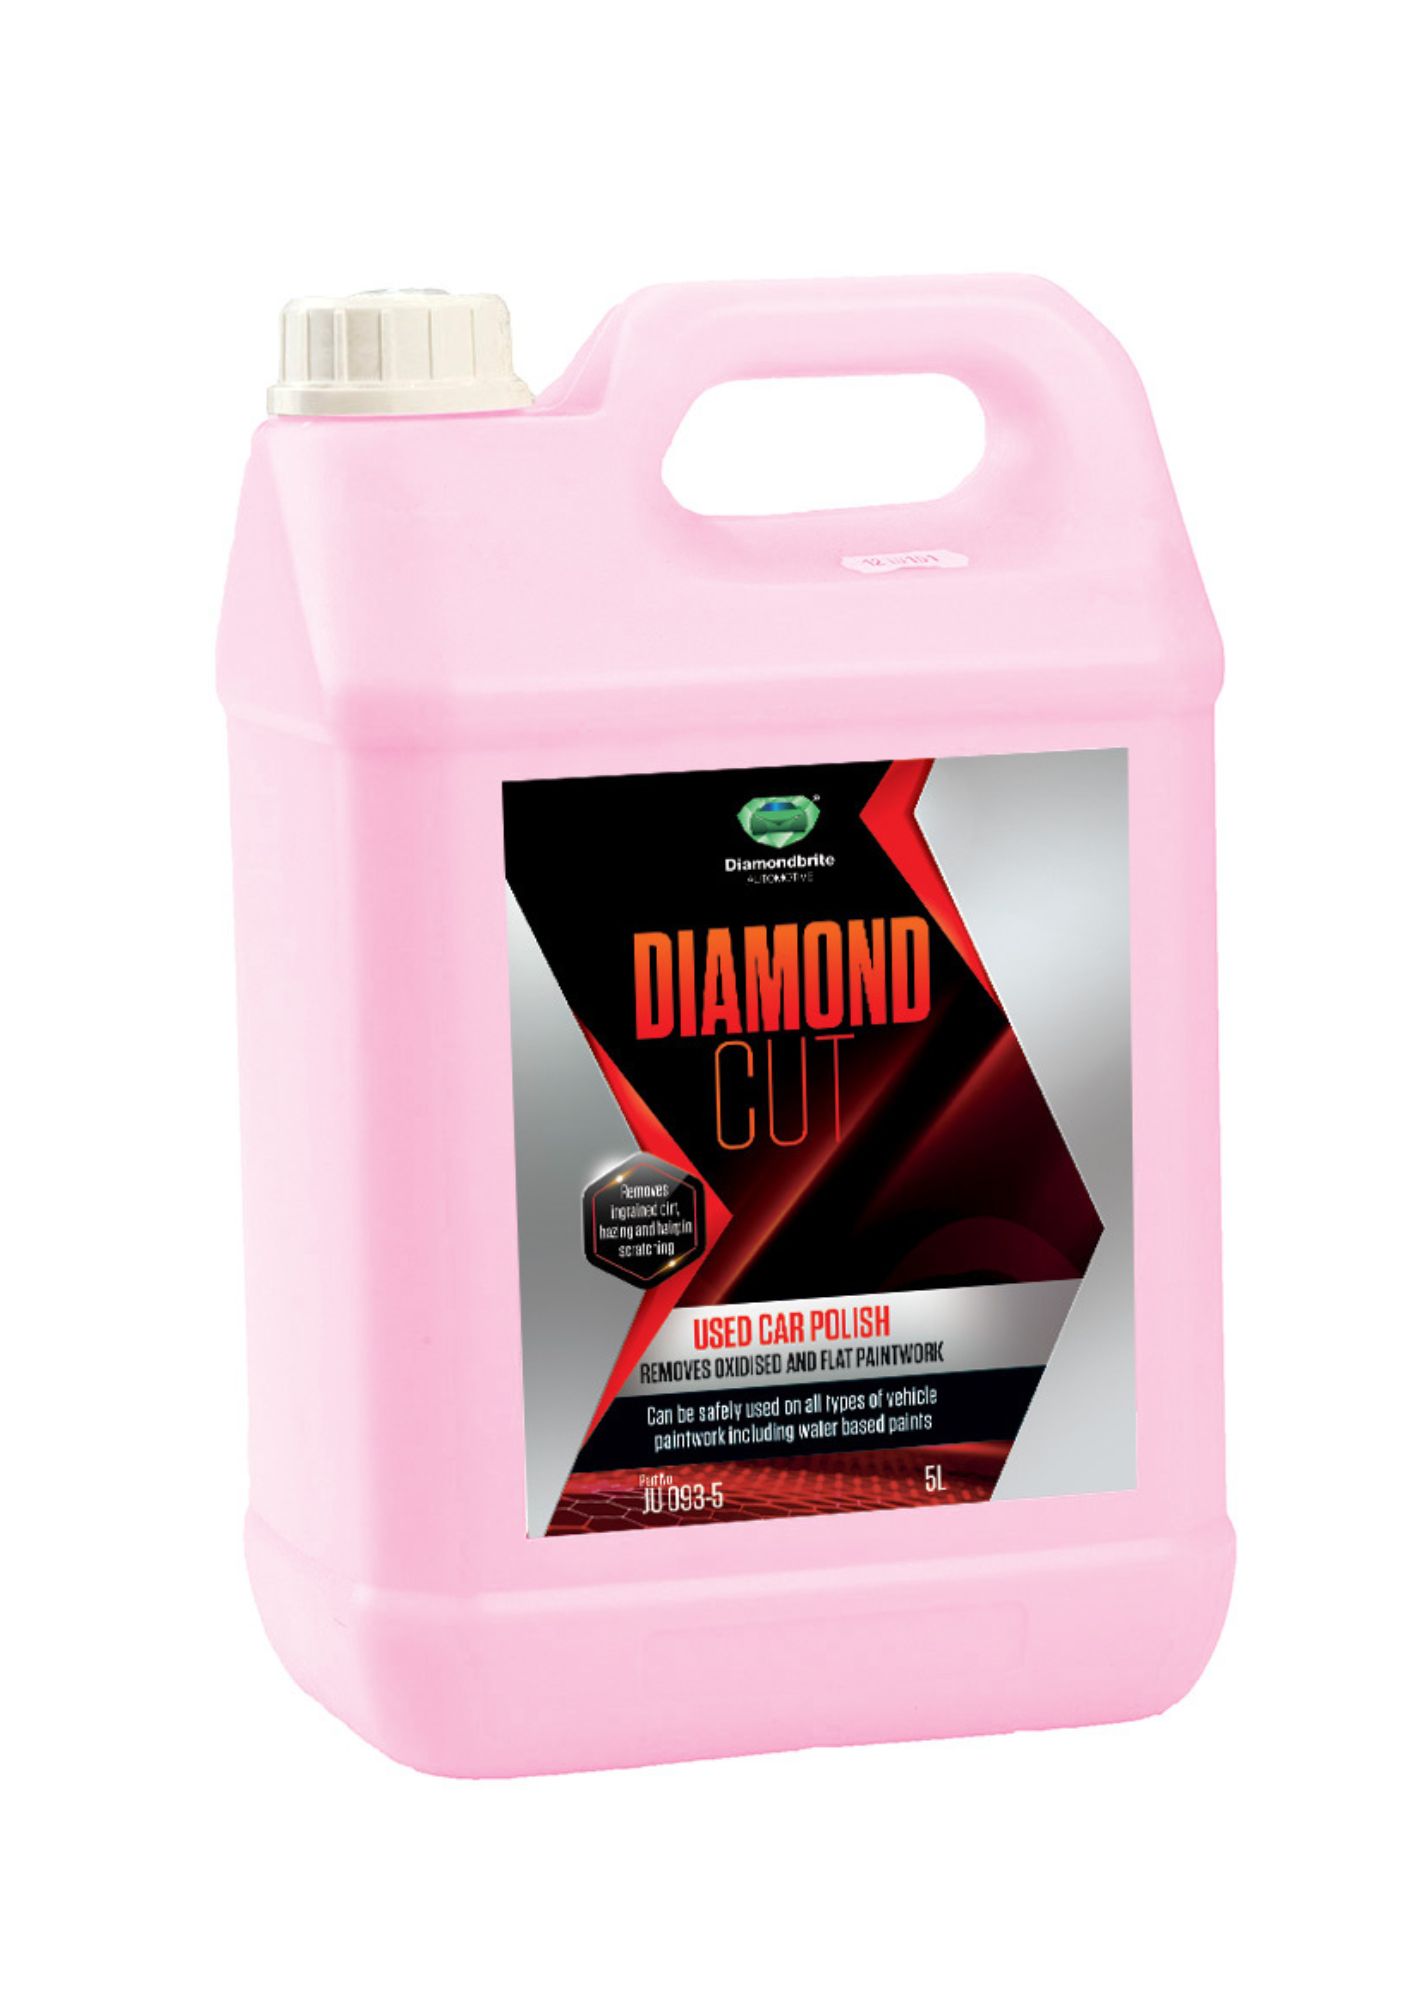 Diamondbrite Diamond Cut Polish Pink Vaha